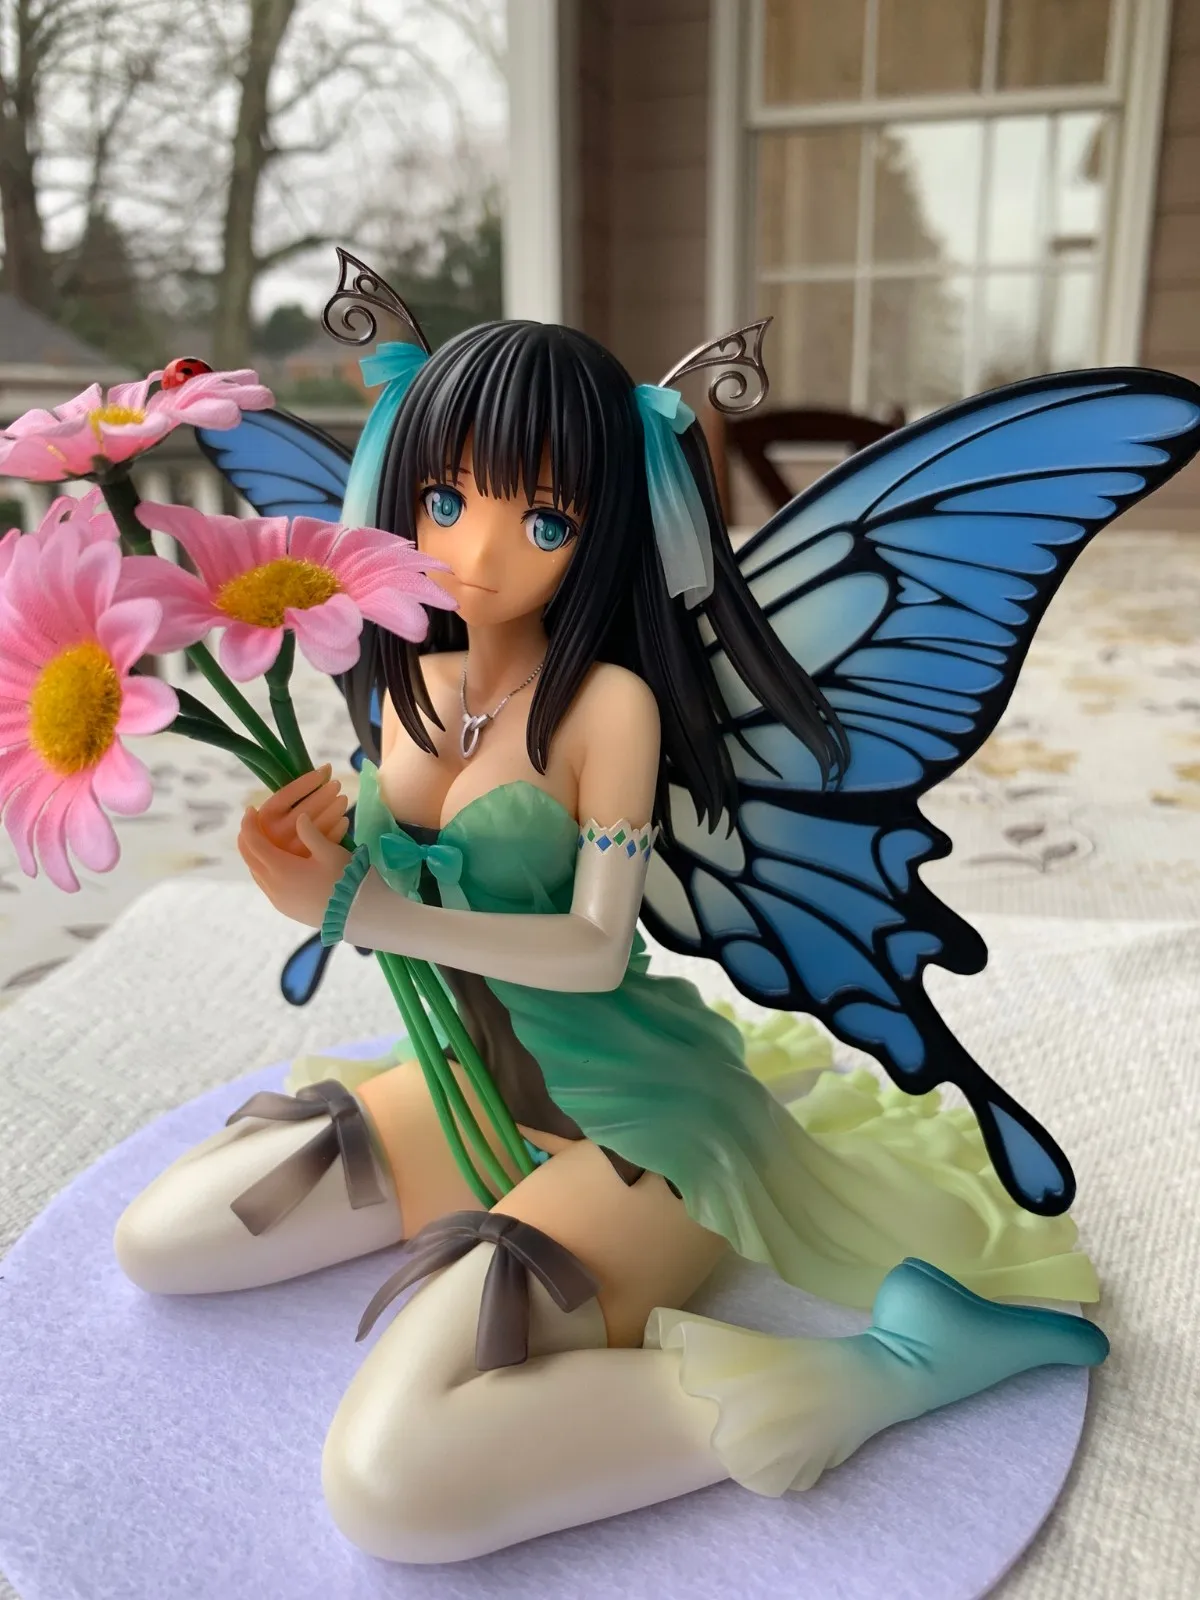 KOTOBUKIYA TONY Aion Rine четыре листа Хранитель мира сексуальная фигурка героя из японского аниме фигурки для взрослых игрушки Аниме - Цвет: 15cm in retail box